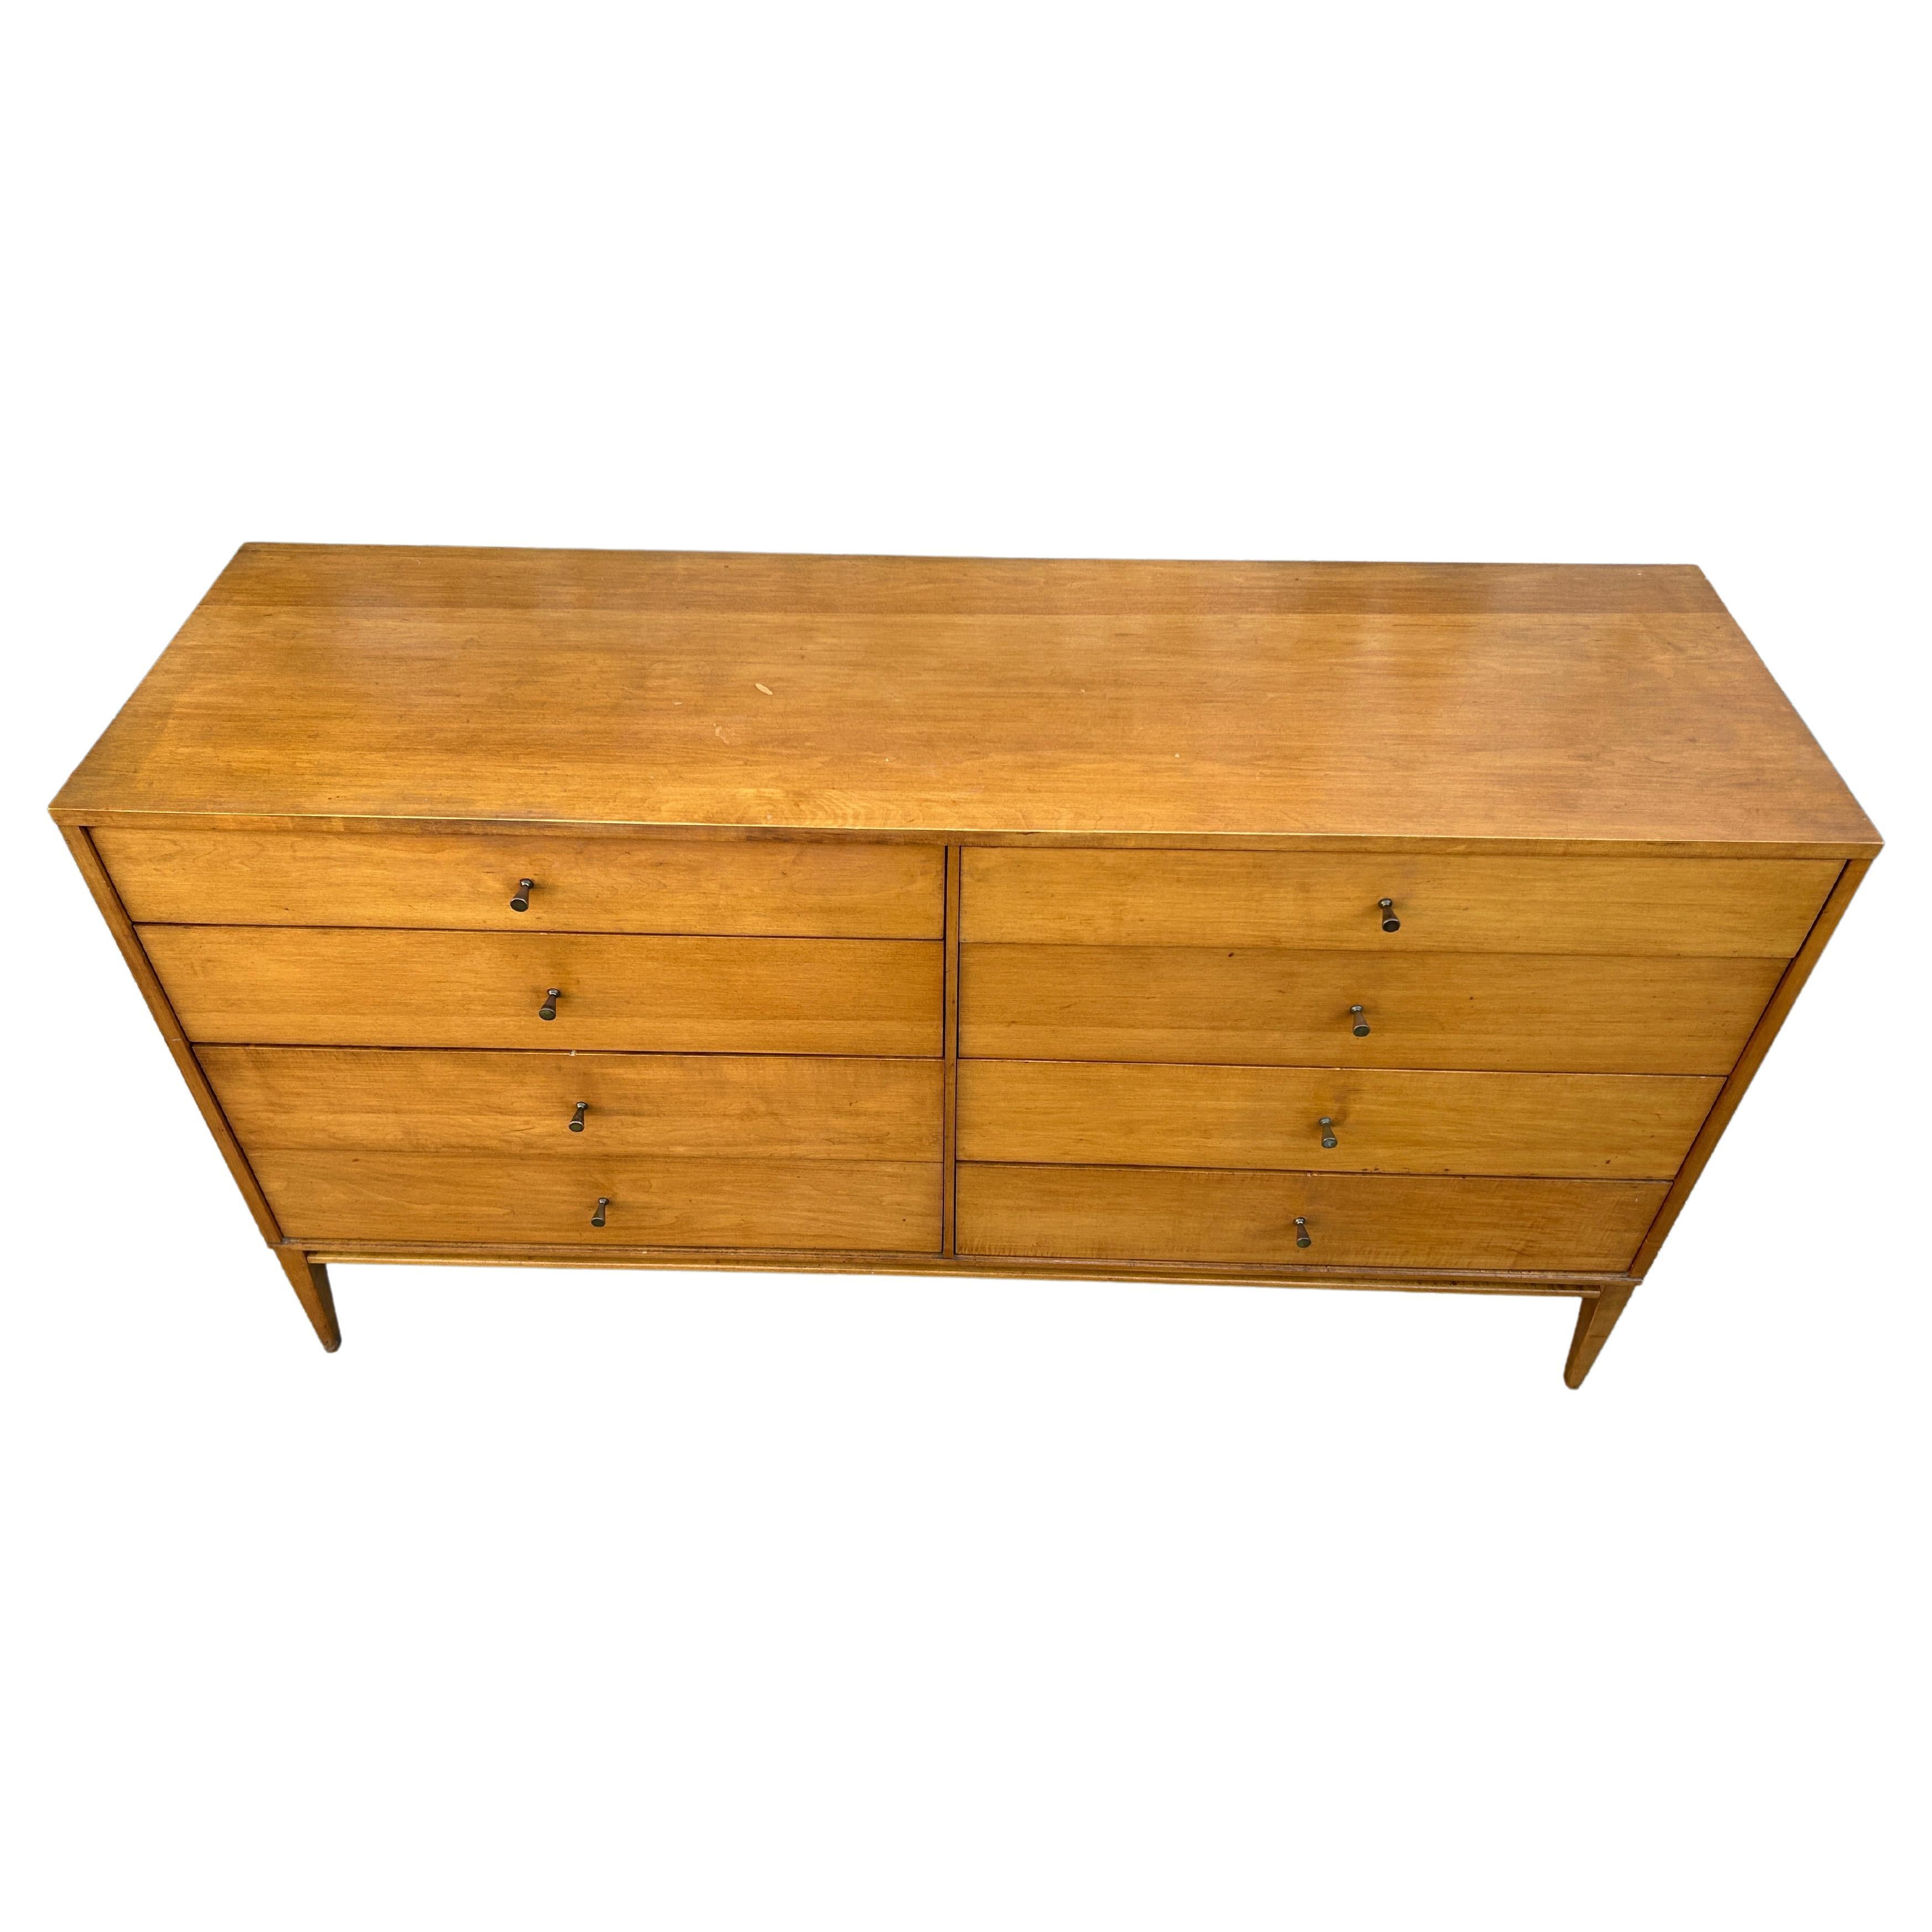 Woodwork Mid-Century Paul McCobb 8-Drawer Dresser Credenza #1507 Blonde Maple Brass Pulls